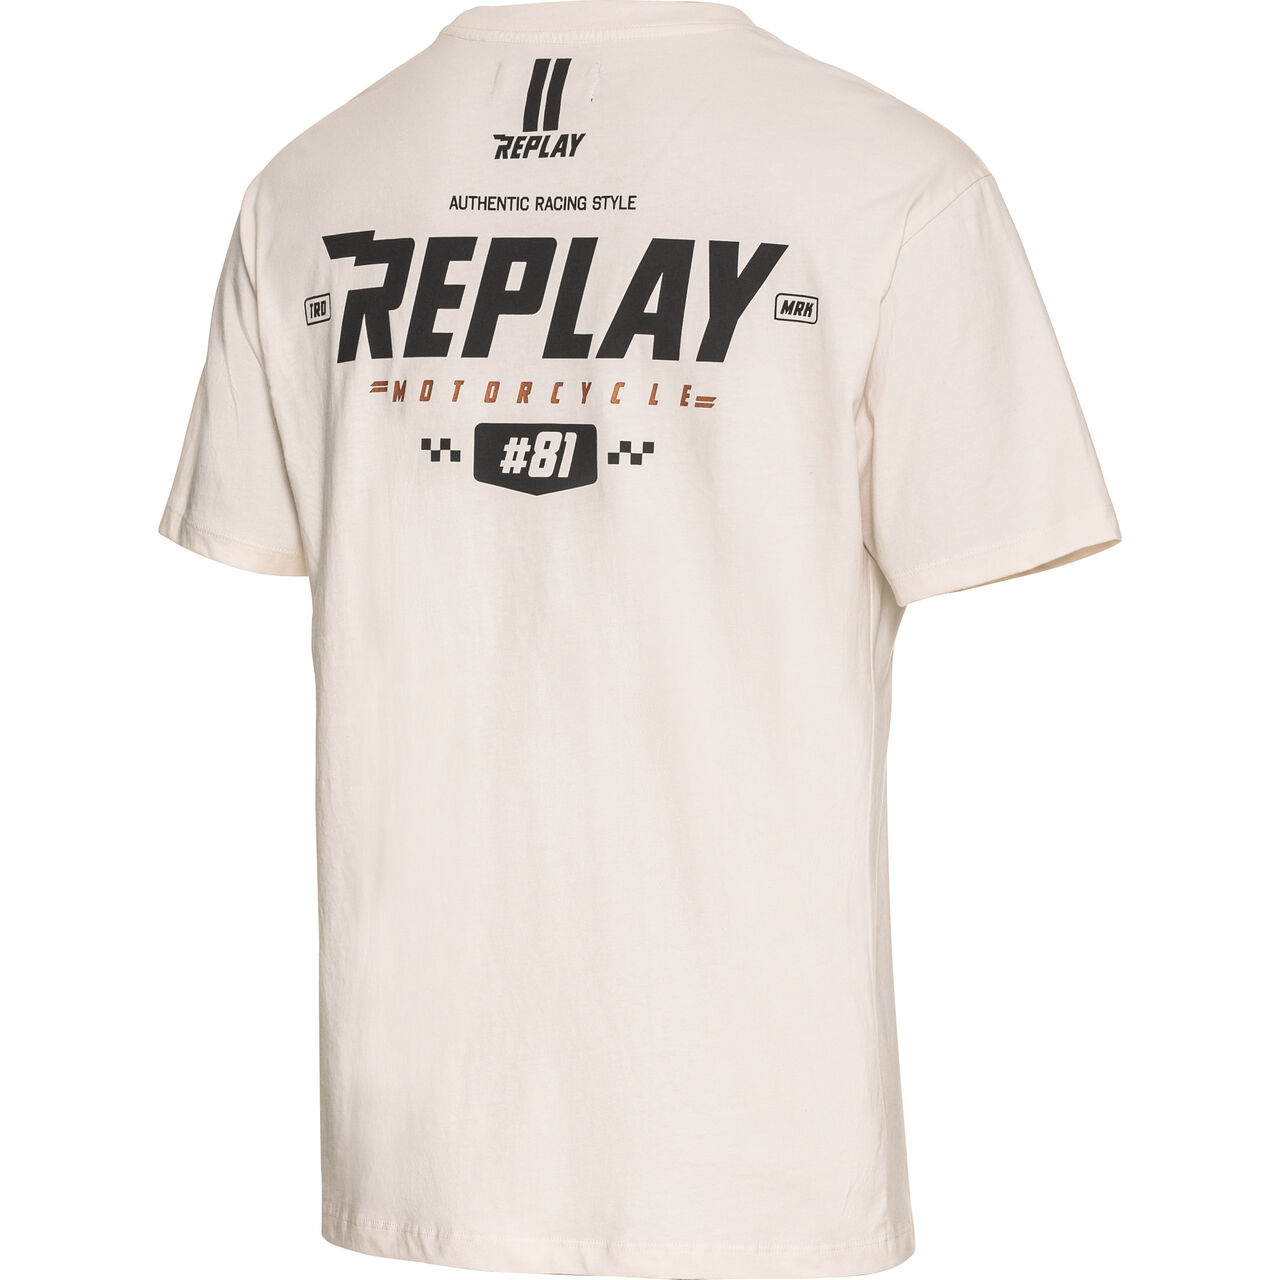 2 kaufen Grau Replay - Exclusiv POLO Motorrad T-Shirt